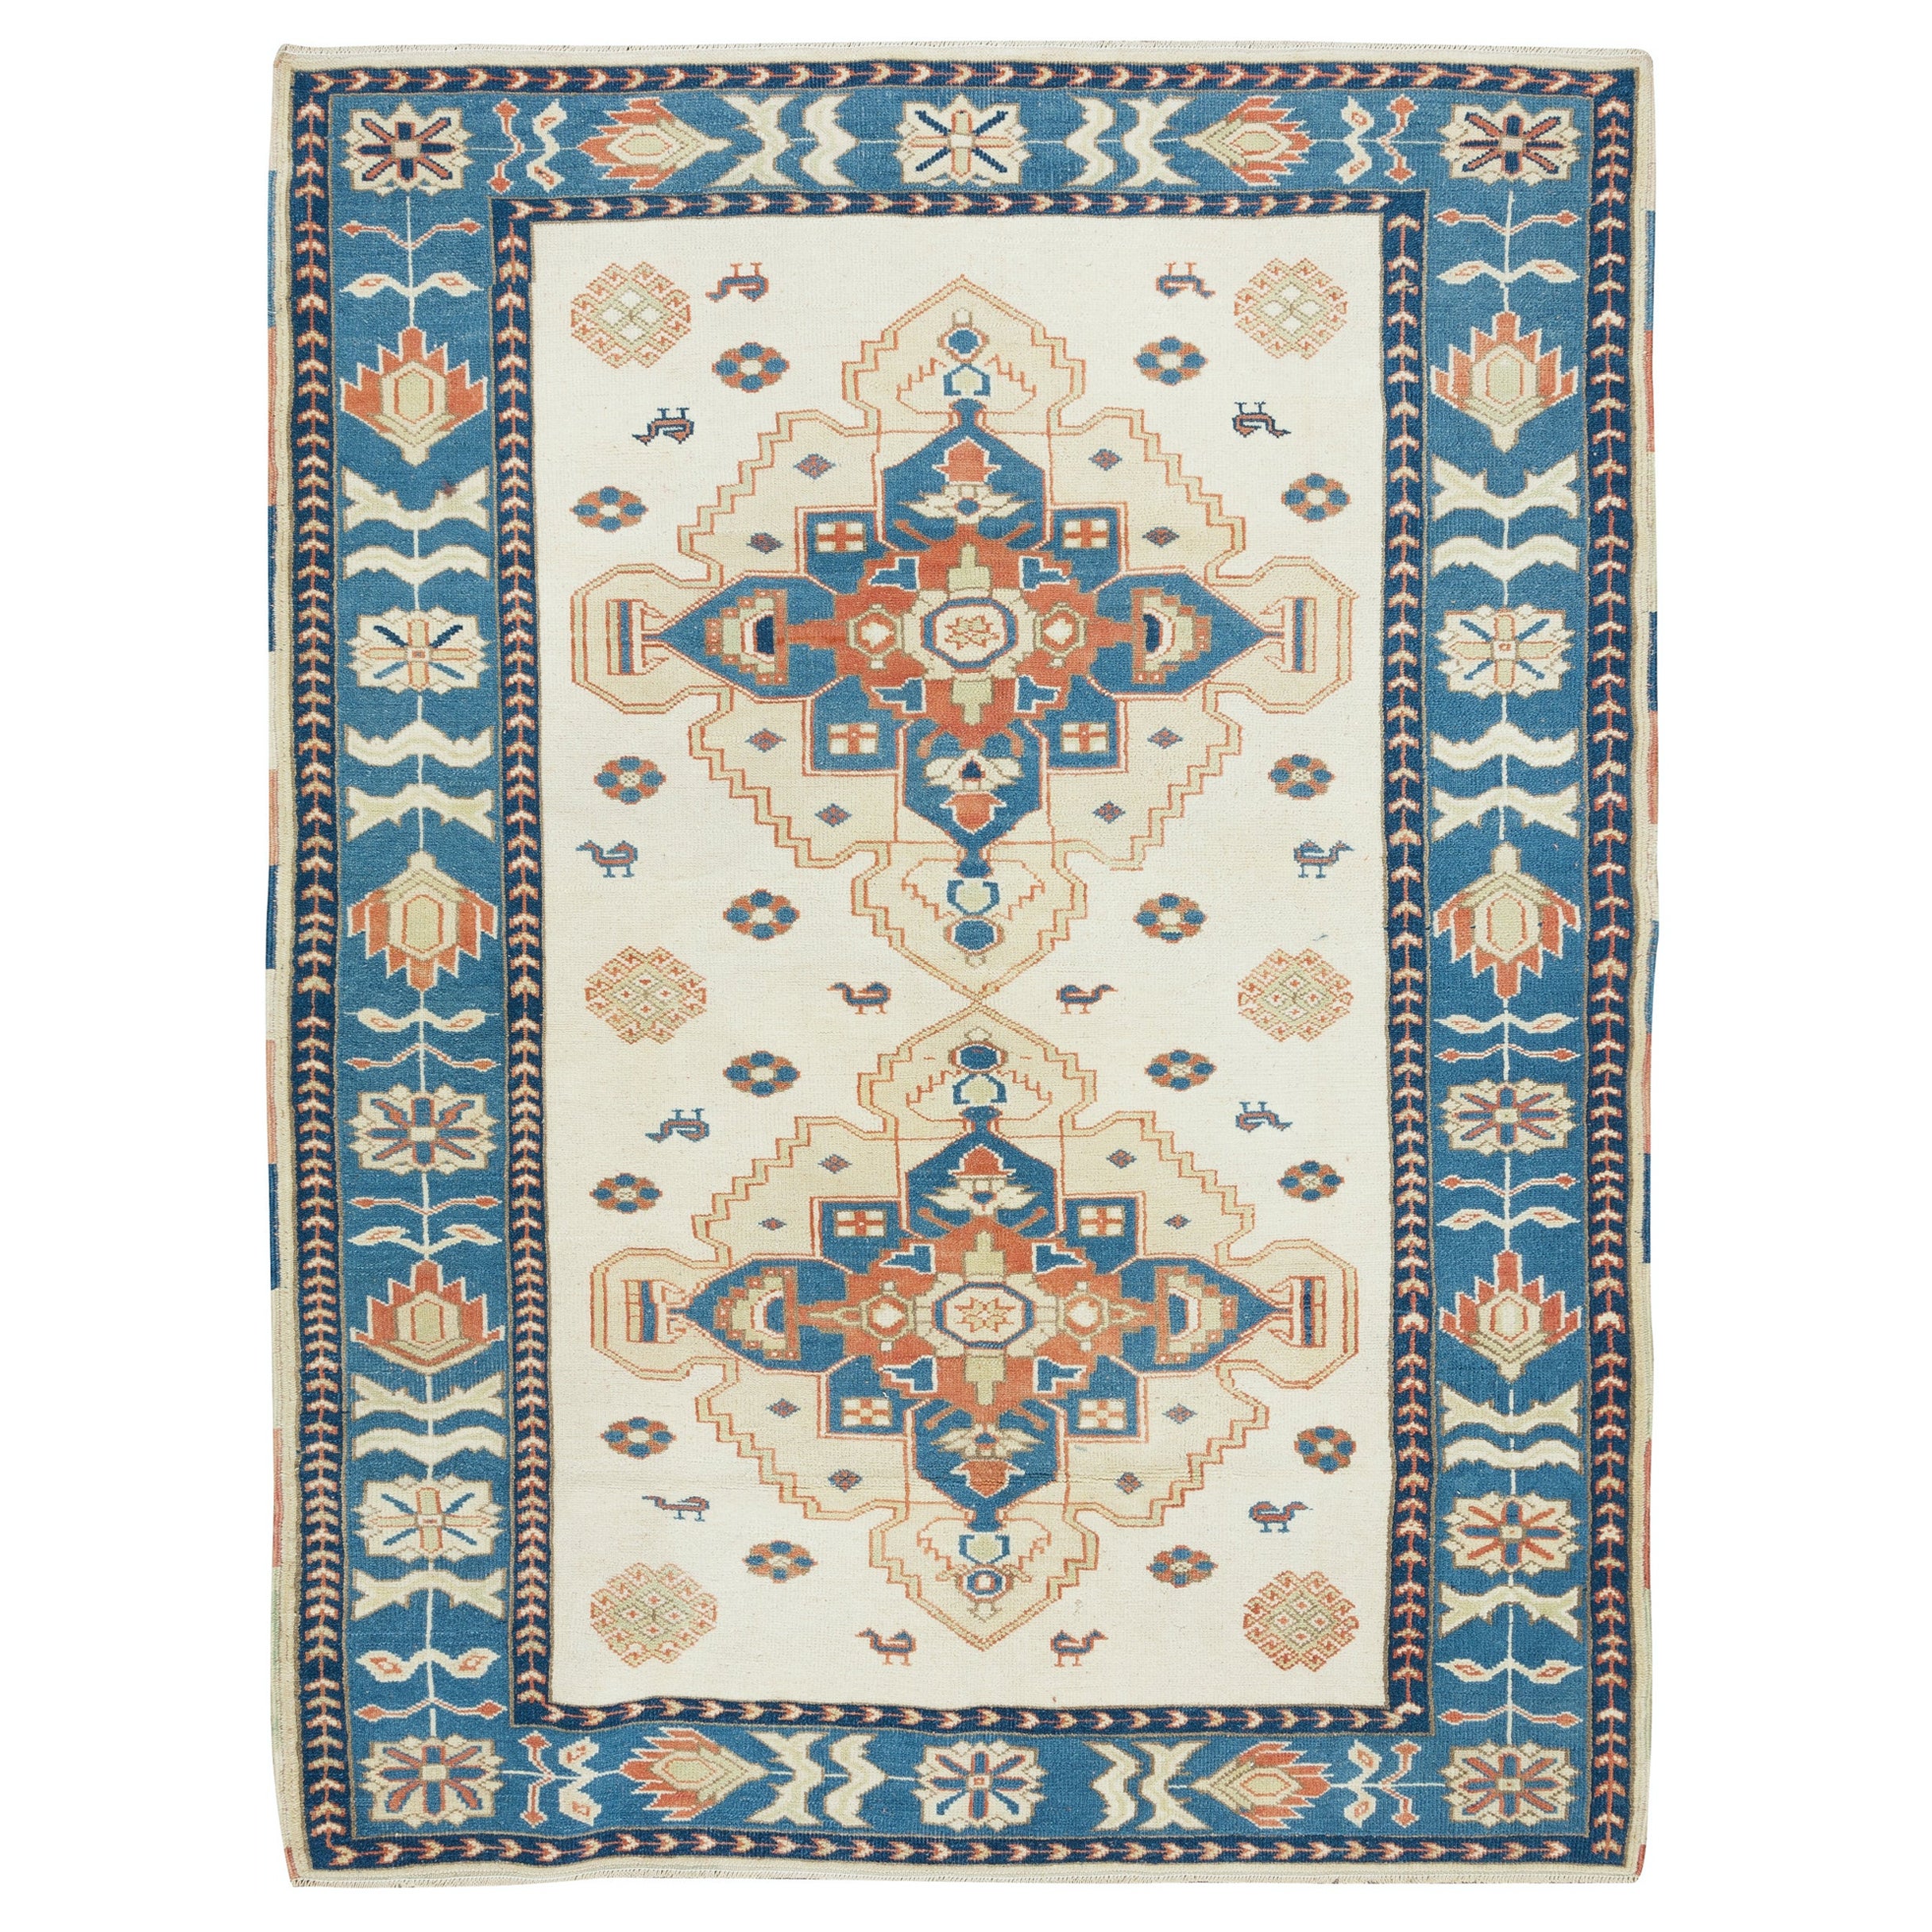 4.6x6.3 Ft Vintage Turkish Wool Rug, Handmade Geometric Carpet in Beige and Blue